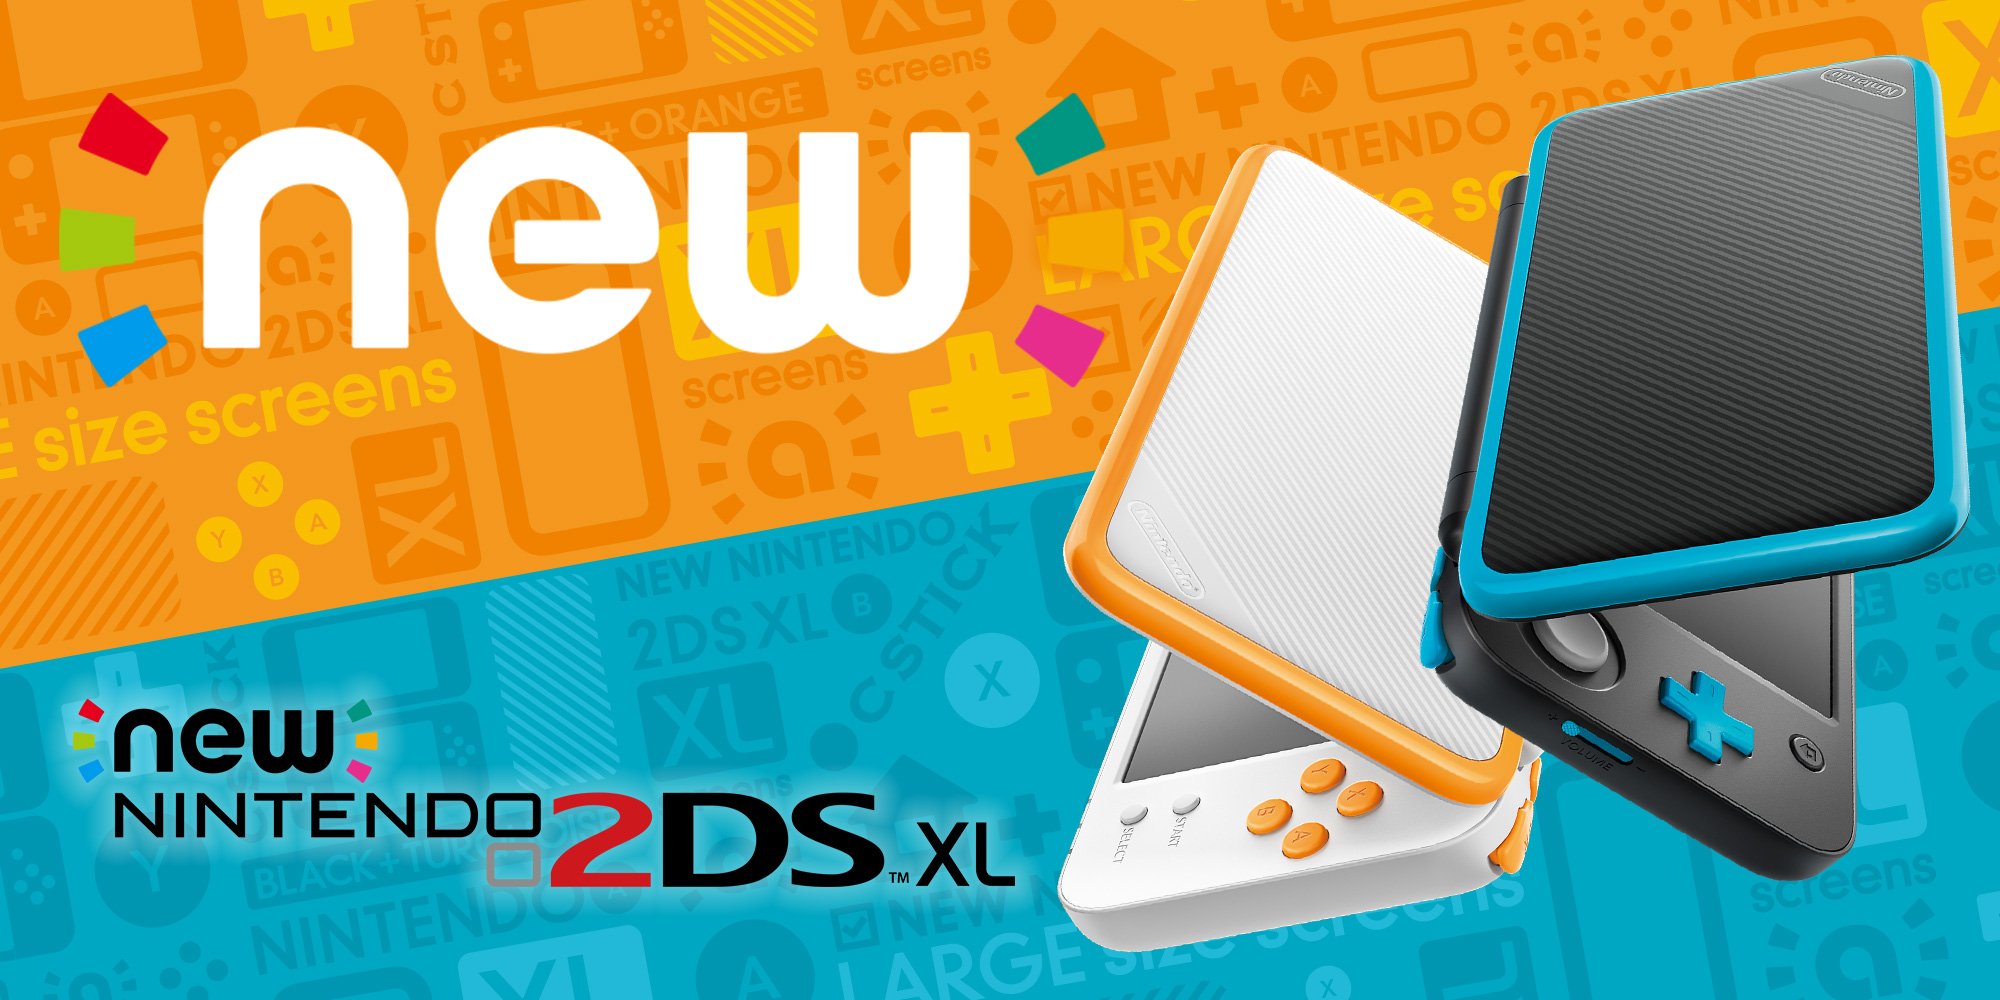 Neue Nintendo-Konsole: New Nintendo 2DS XL erscheint am 28. Juli